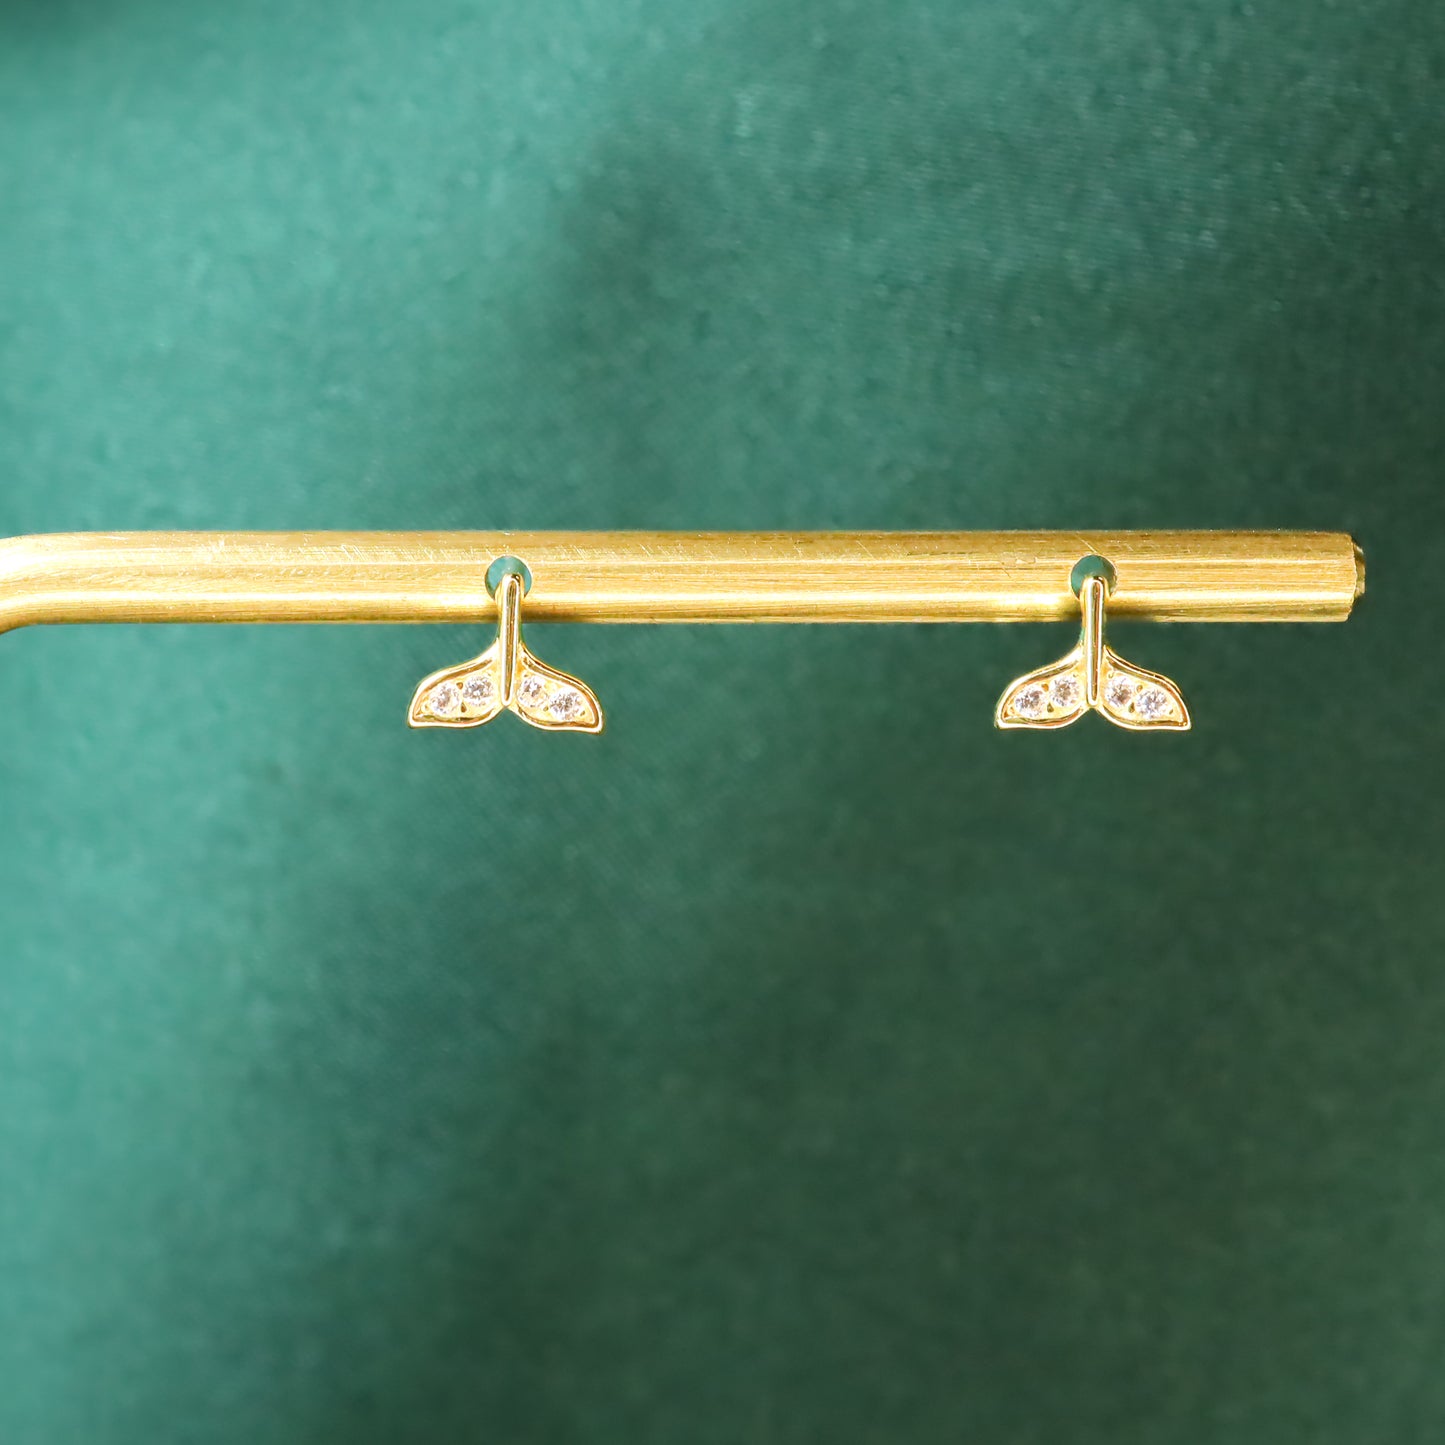 Mermaid Tail - S925 Sterling Silver Stud Earrings